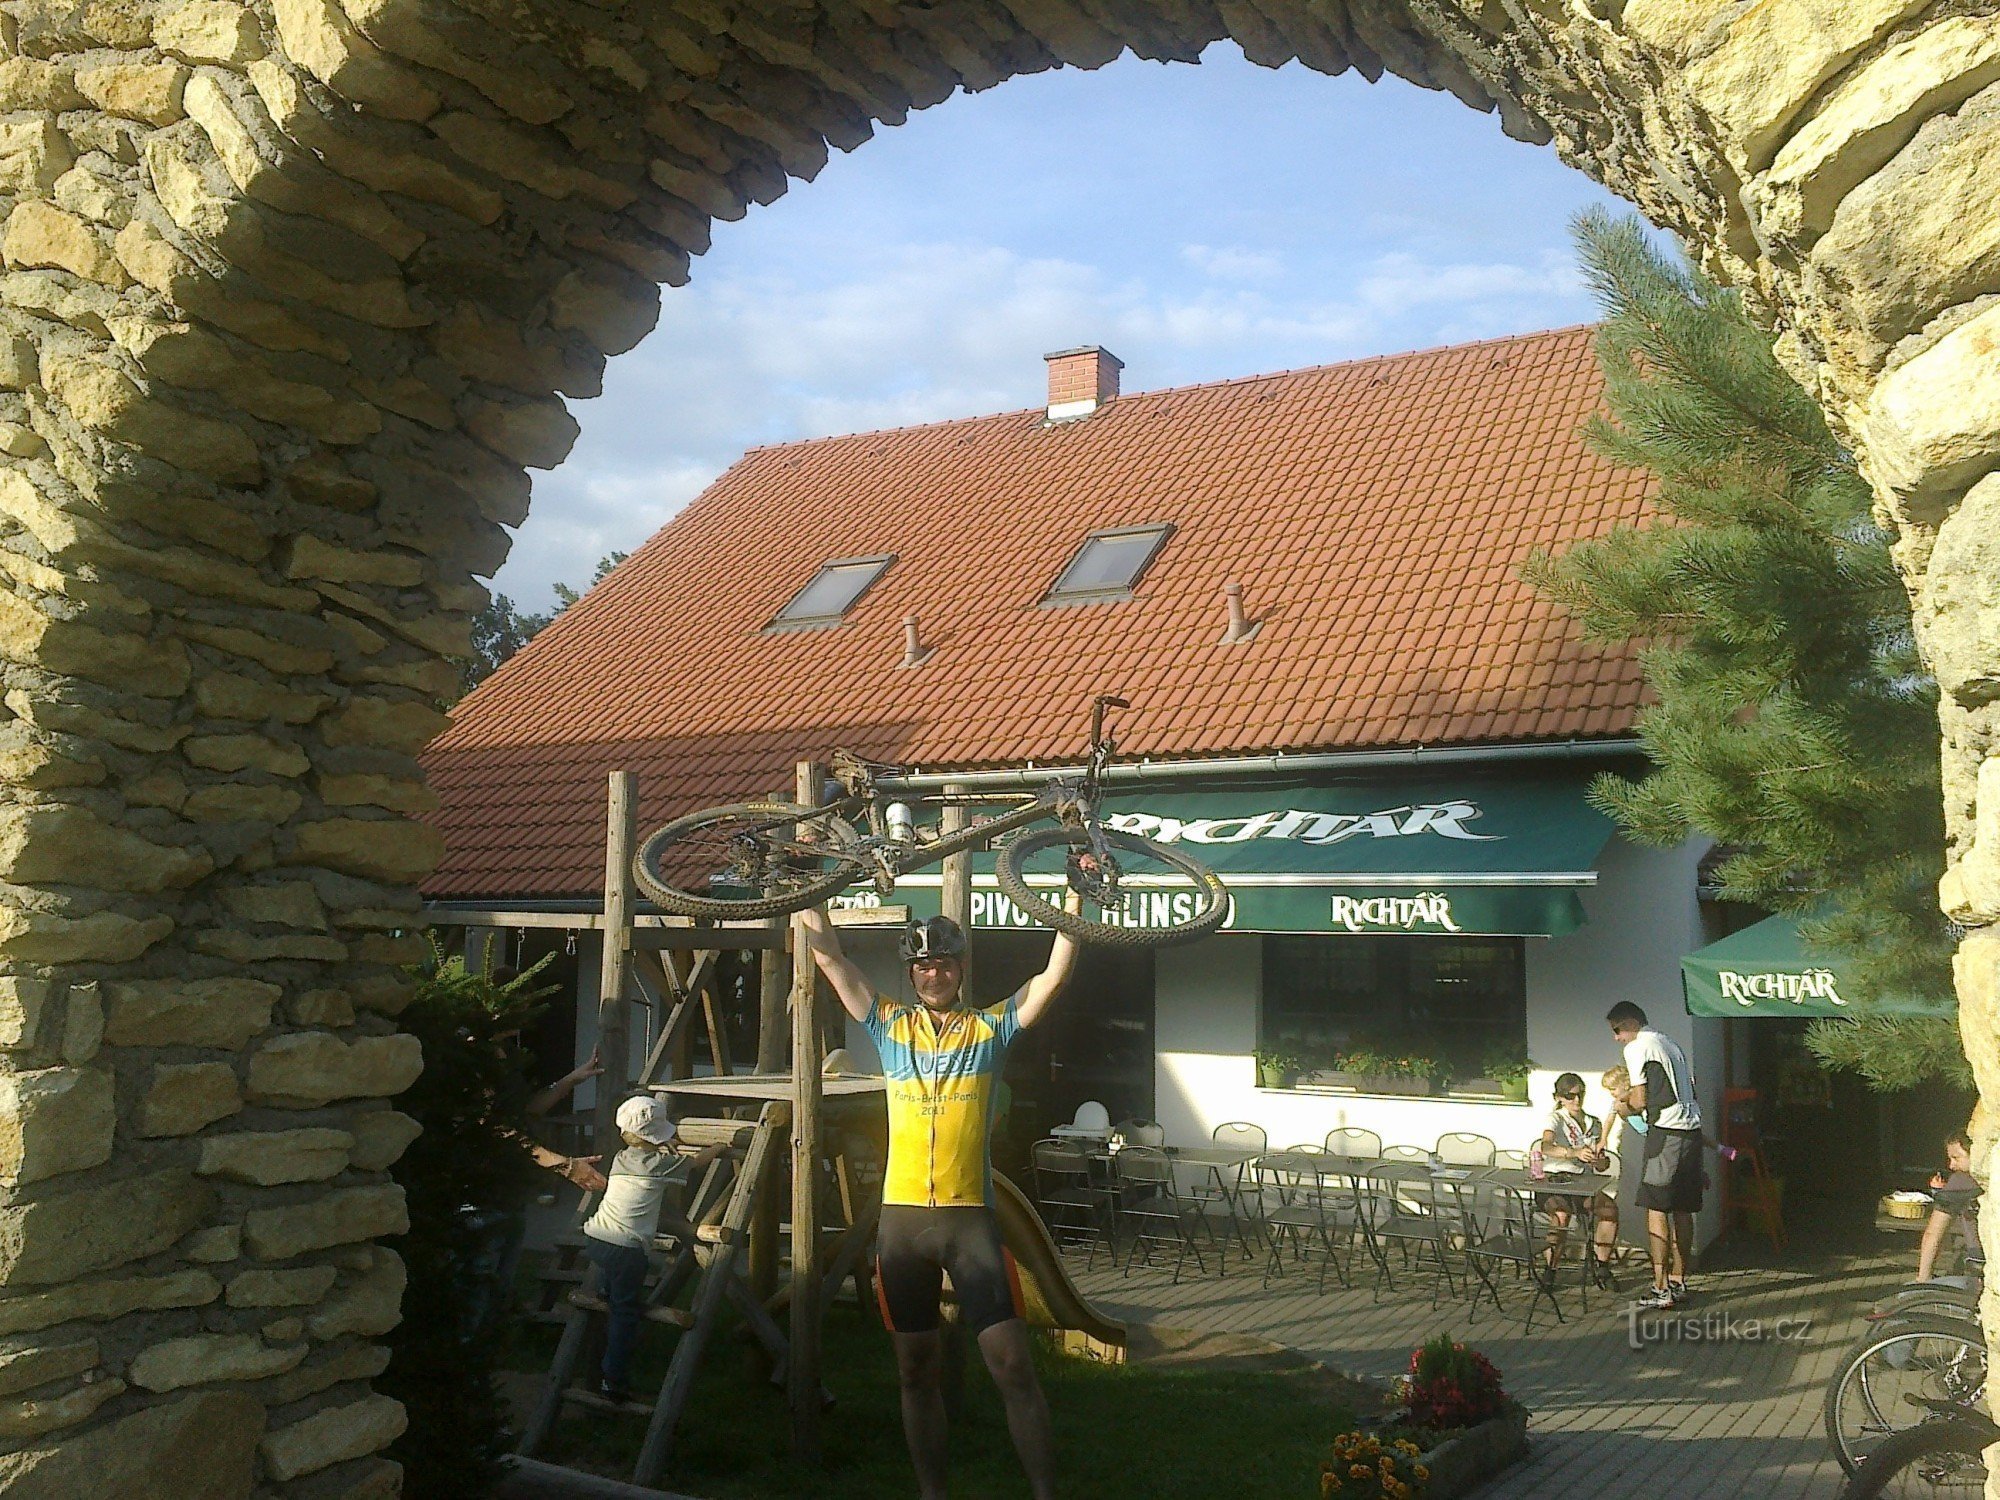 Pelestrovská pub - oázis kerékpárosok és sífutók számára